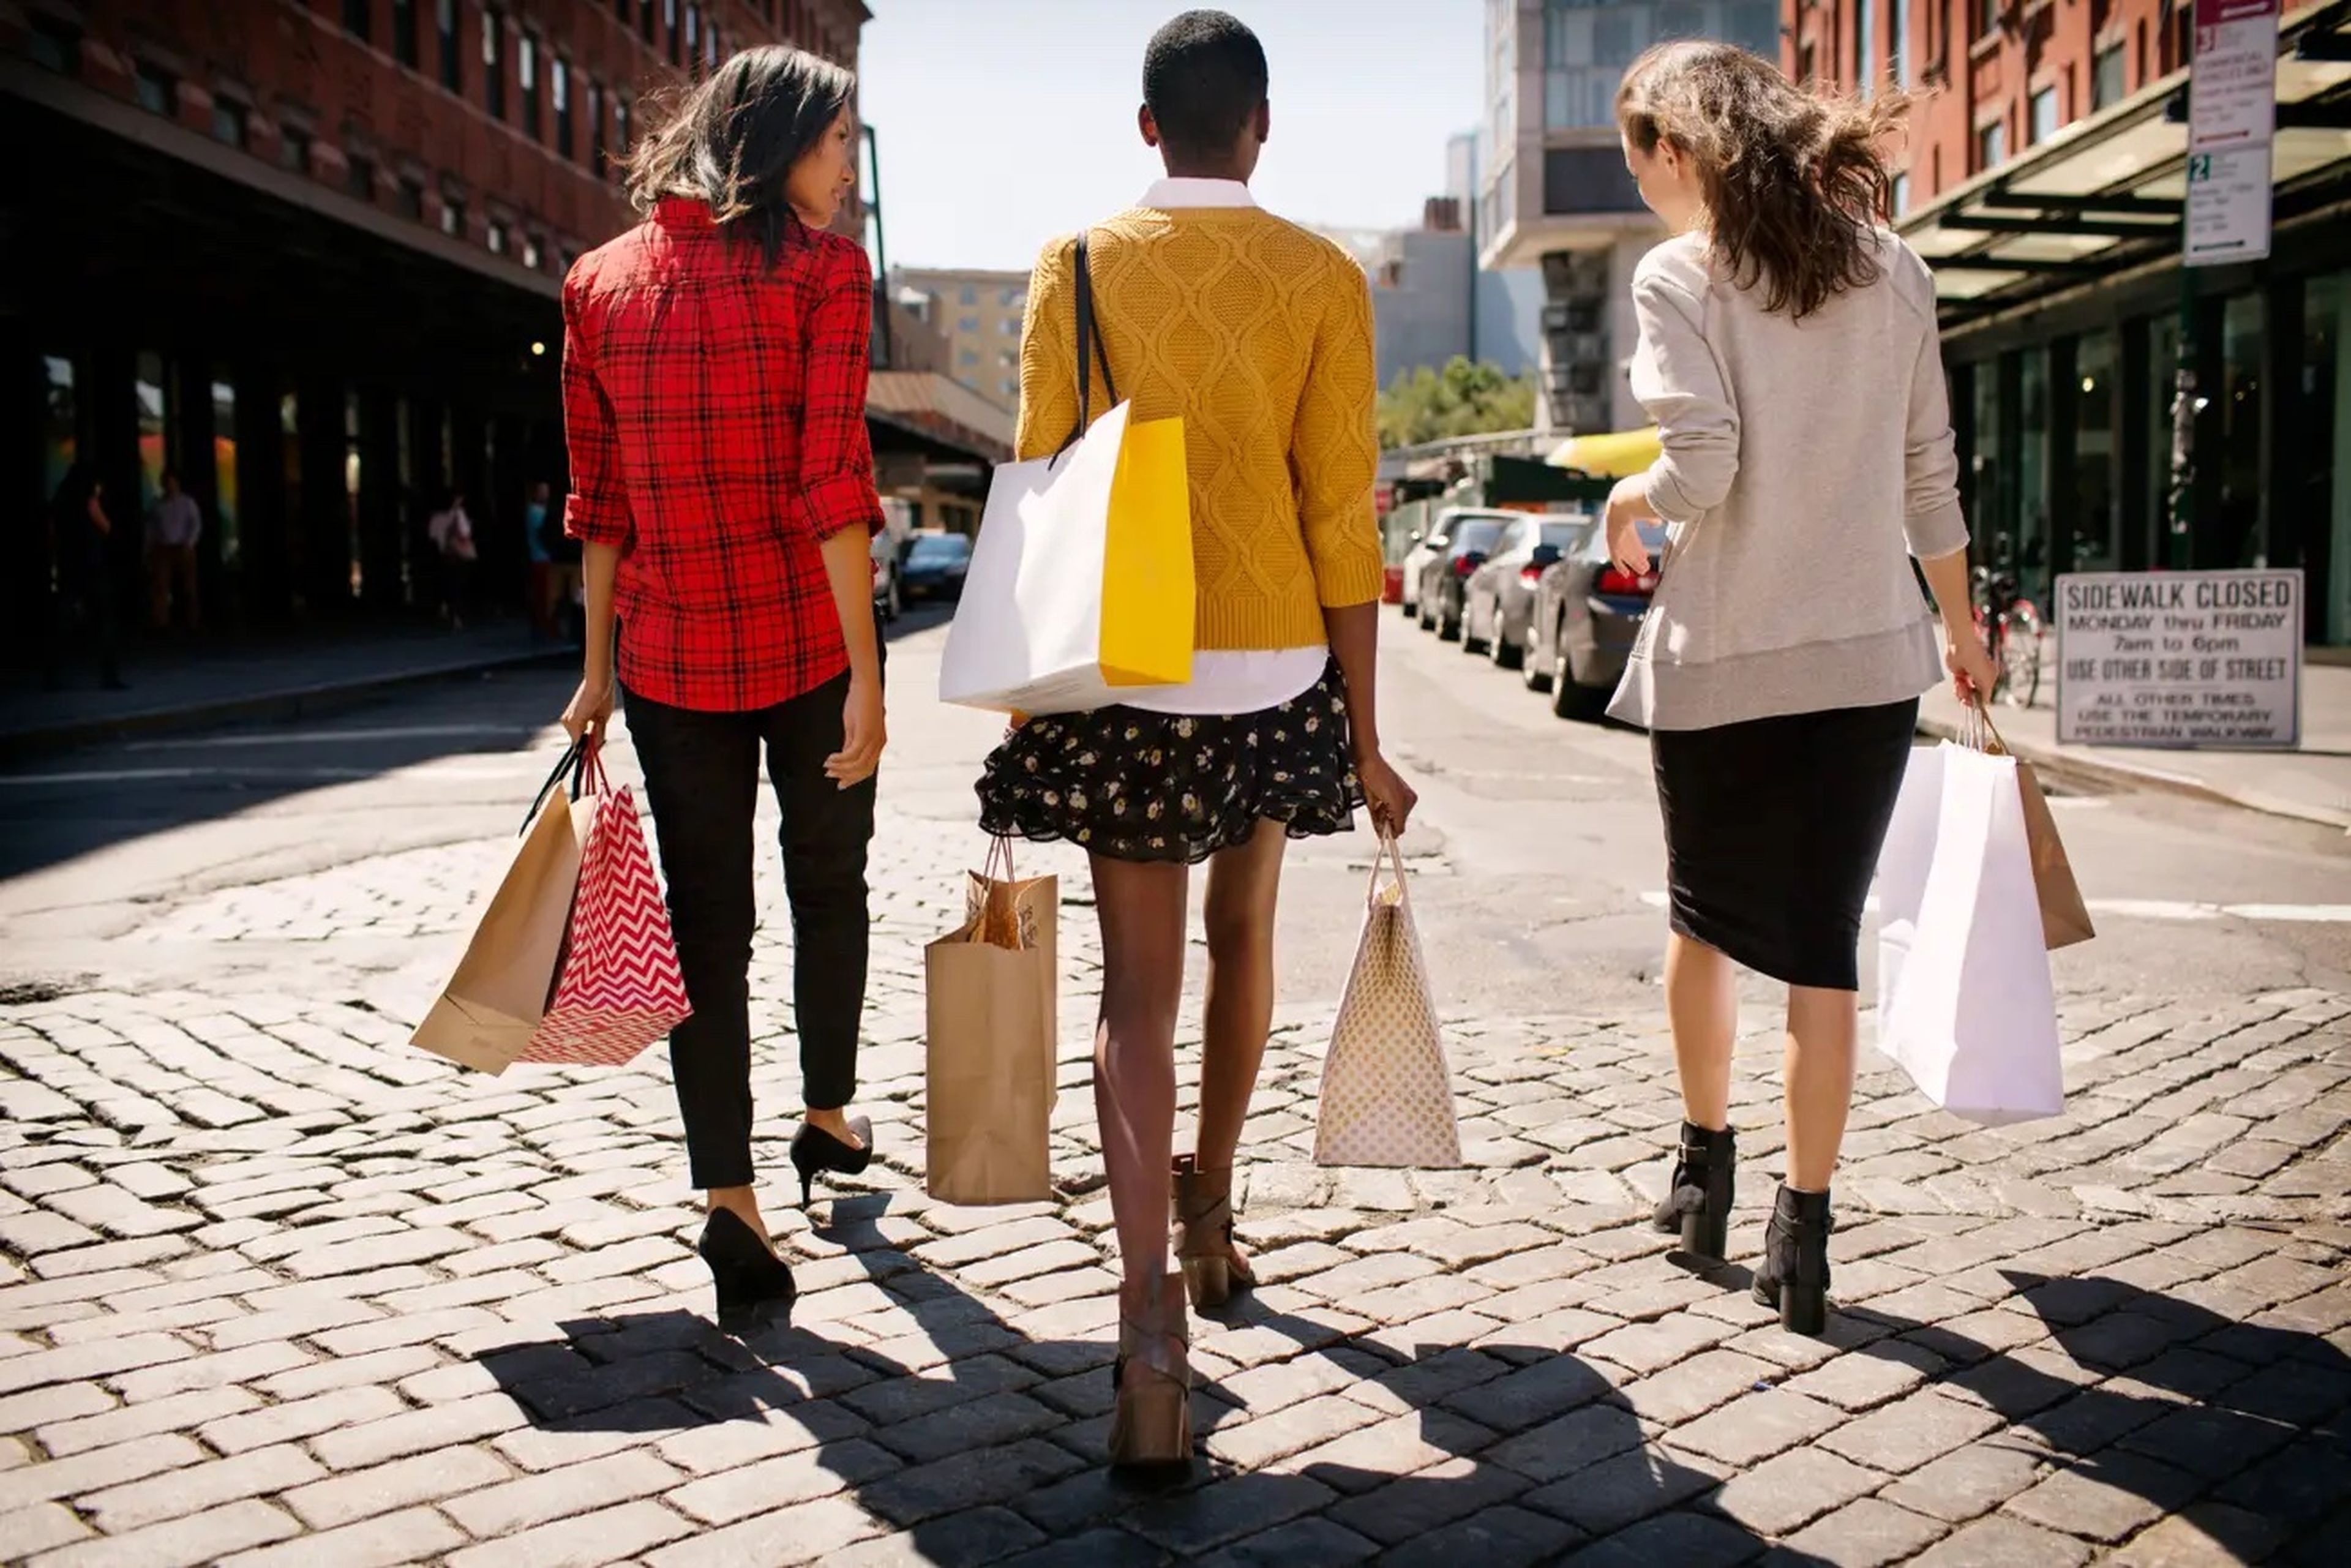 La generación Z está cambiando el embudo de compras según un nuevo estudio.